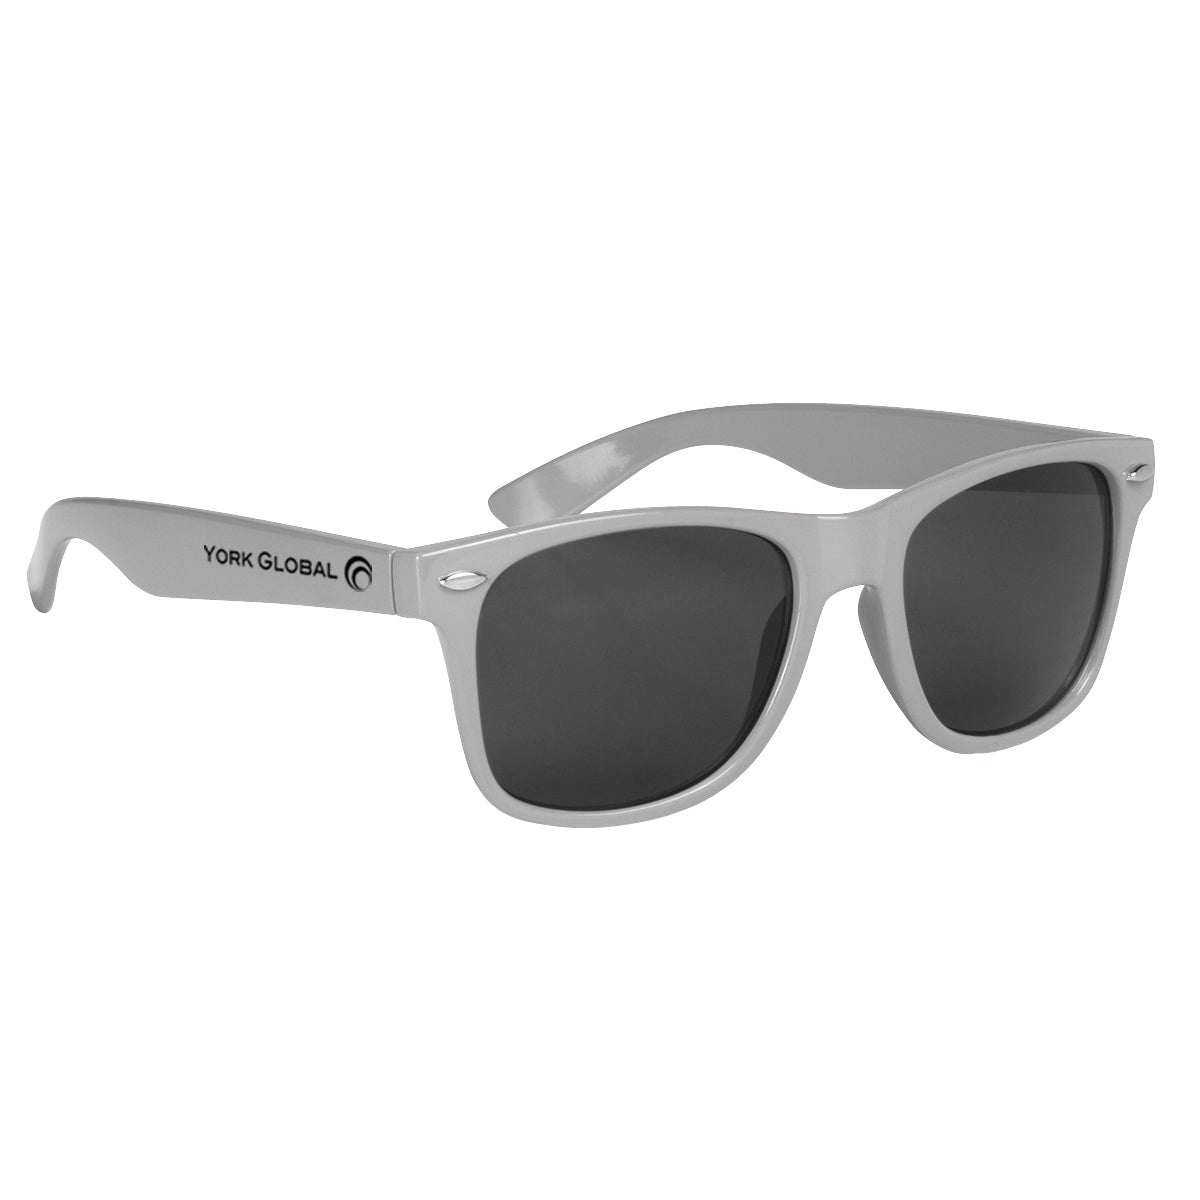 Malibu Sunglasses Sunglasses Hit Promo Silver Single Color 